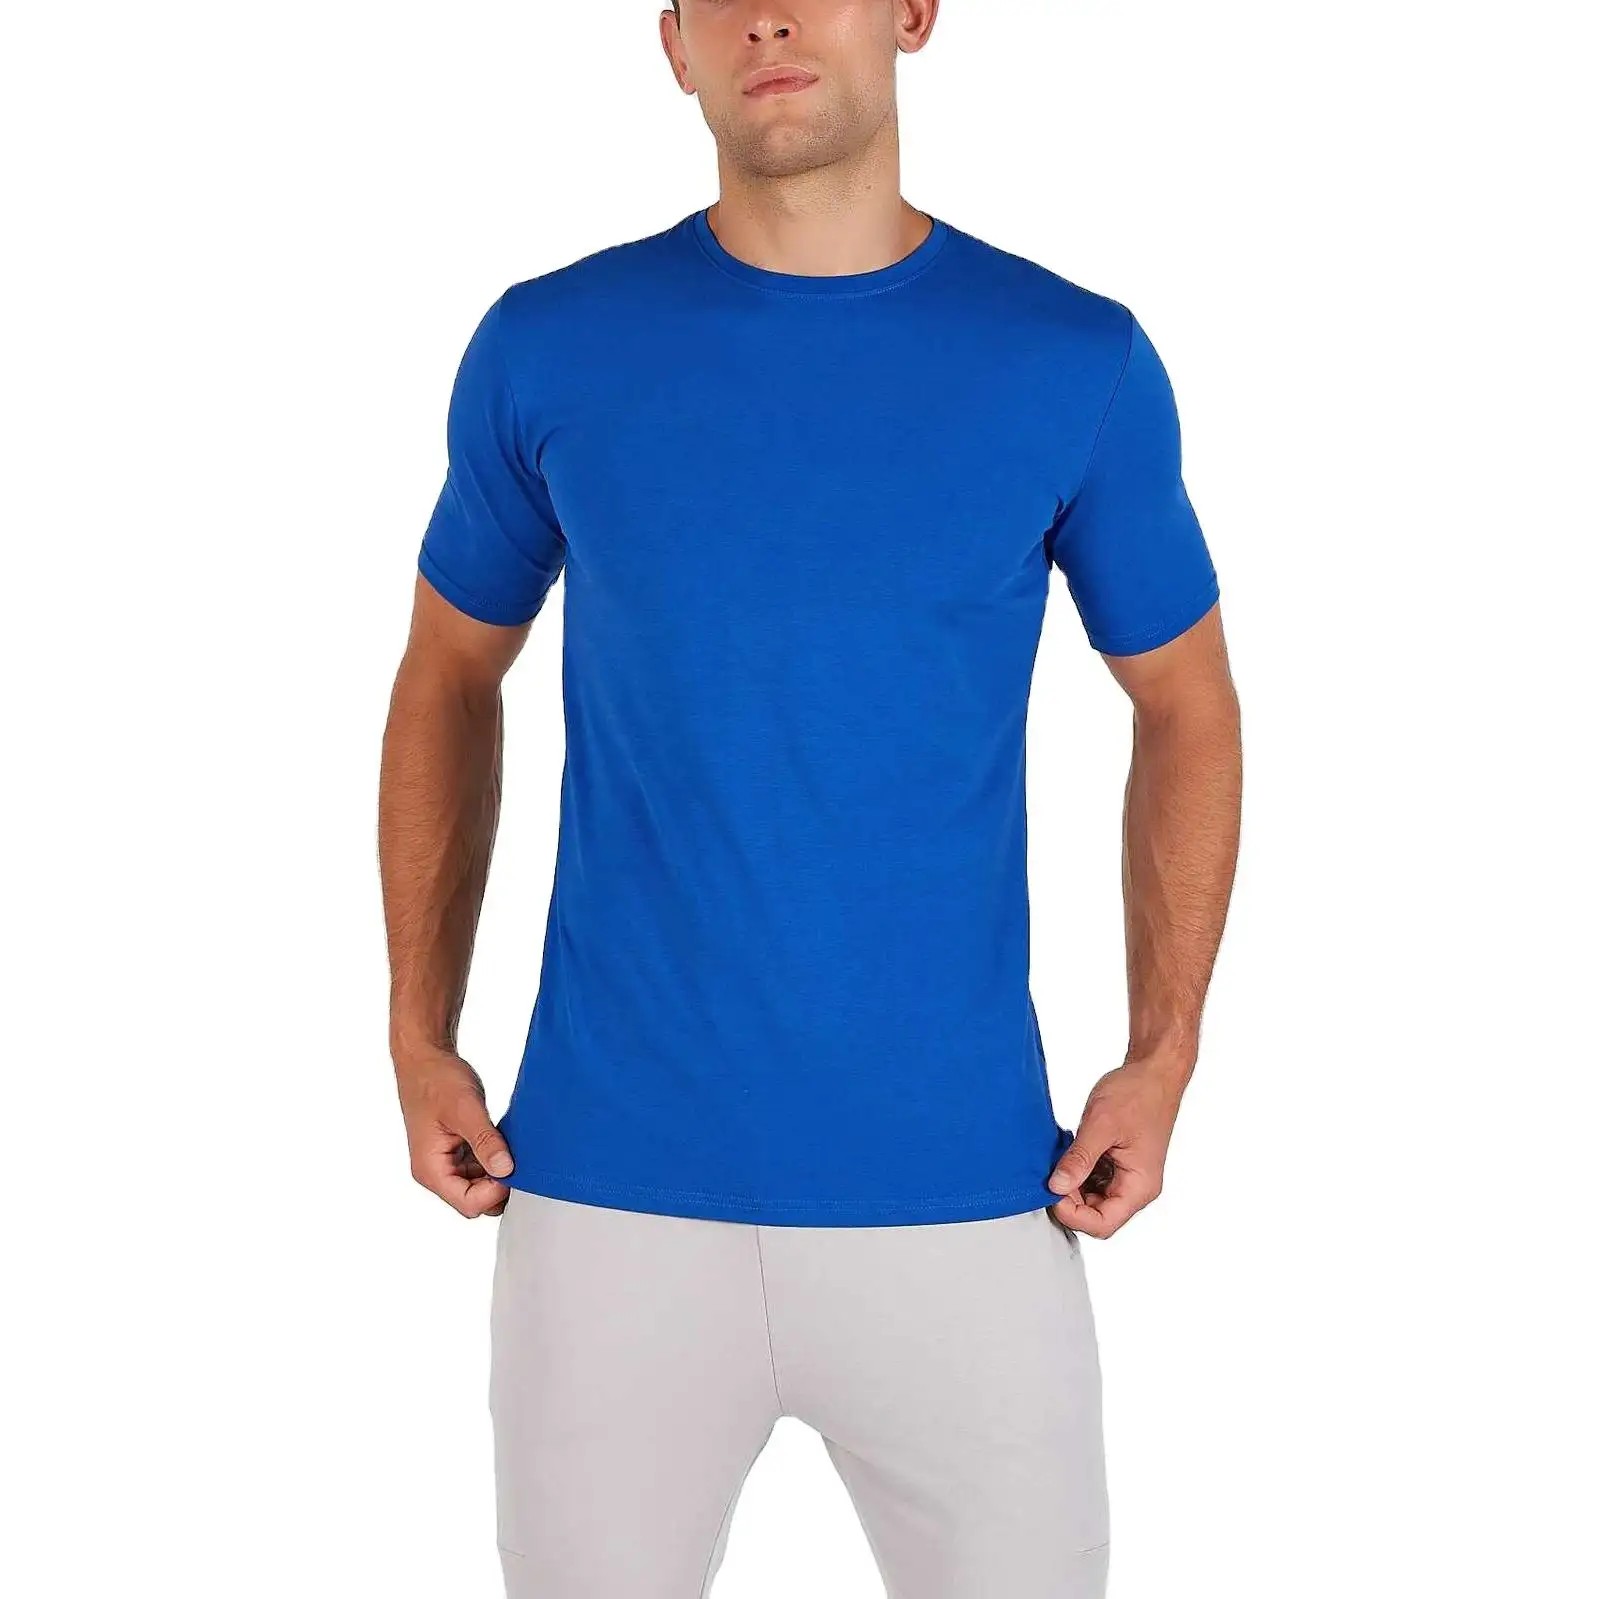 Новый дизайн, мужская спортивная одежда, высокое качество, 95 хлопок, 5 спандекс, футболки, оптовая продажа, заготовки, Хлопковая мужская футболка